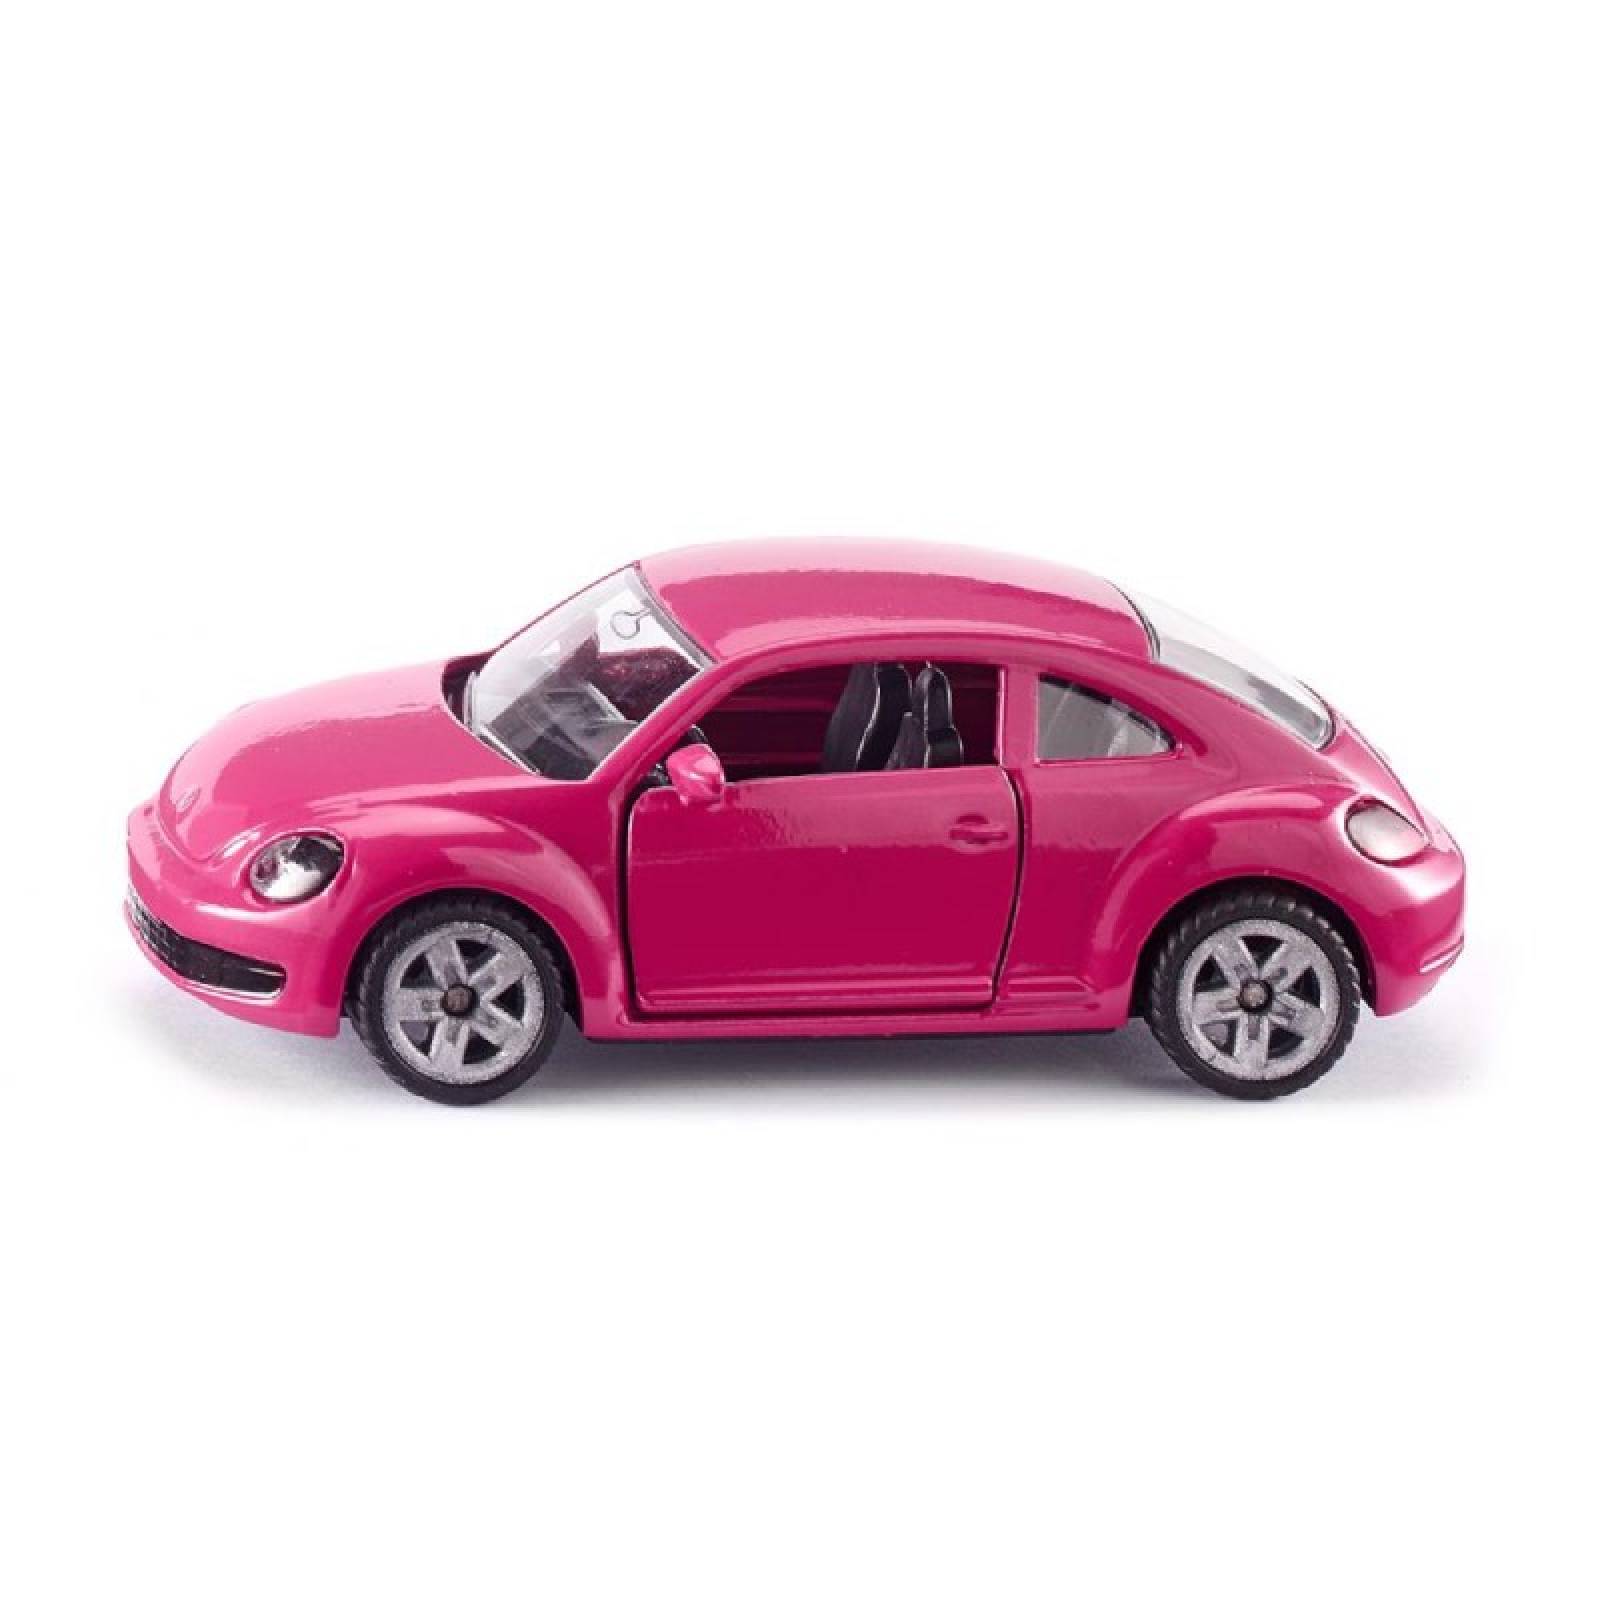 VW Beetle In Pink - Single Die-Cast Toy Vehicle 1488 3+